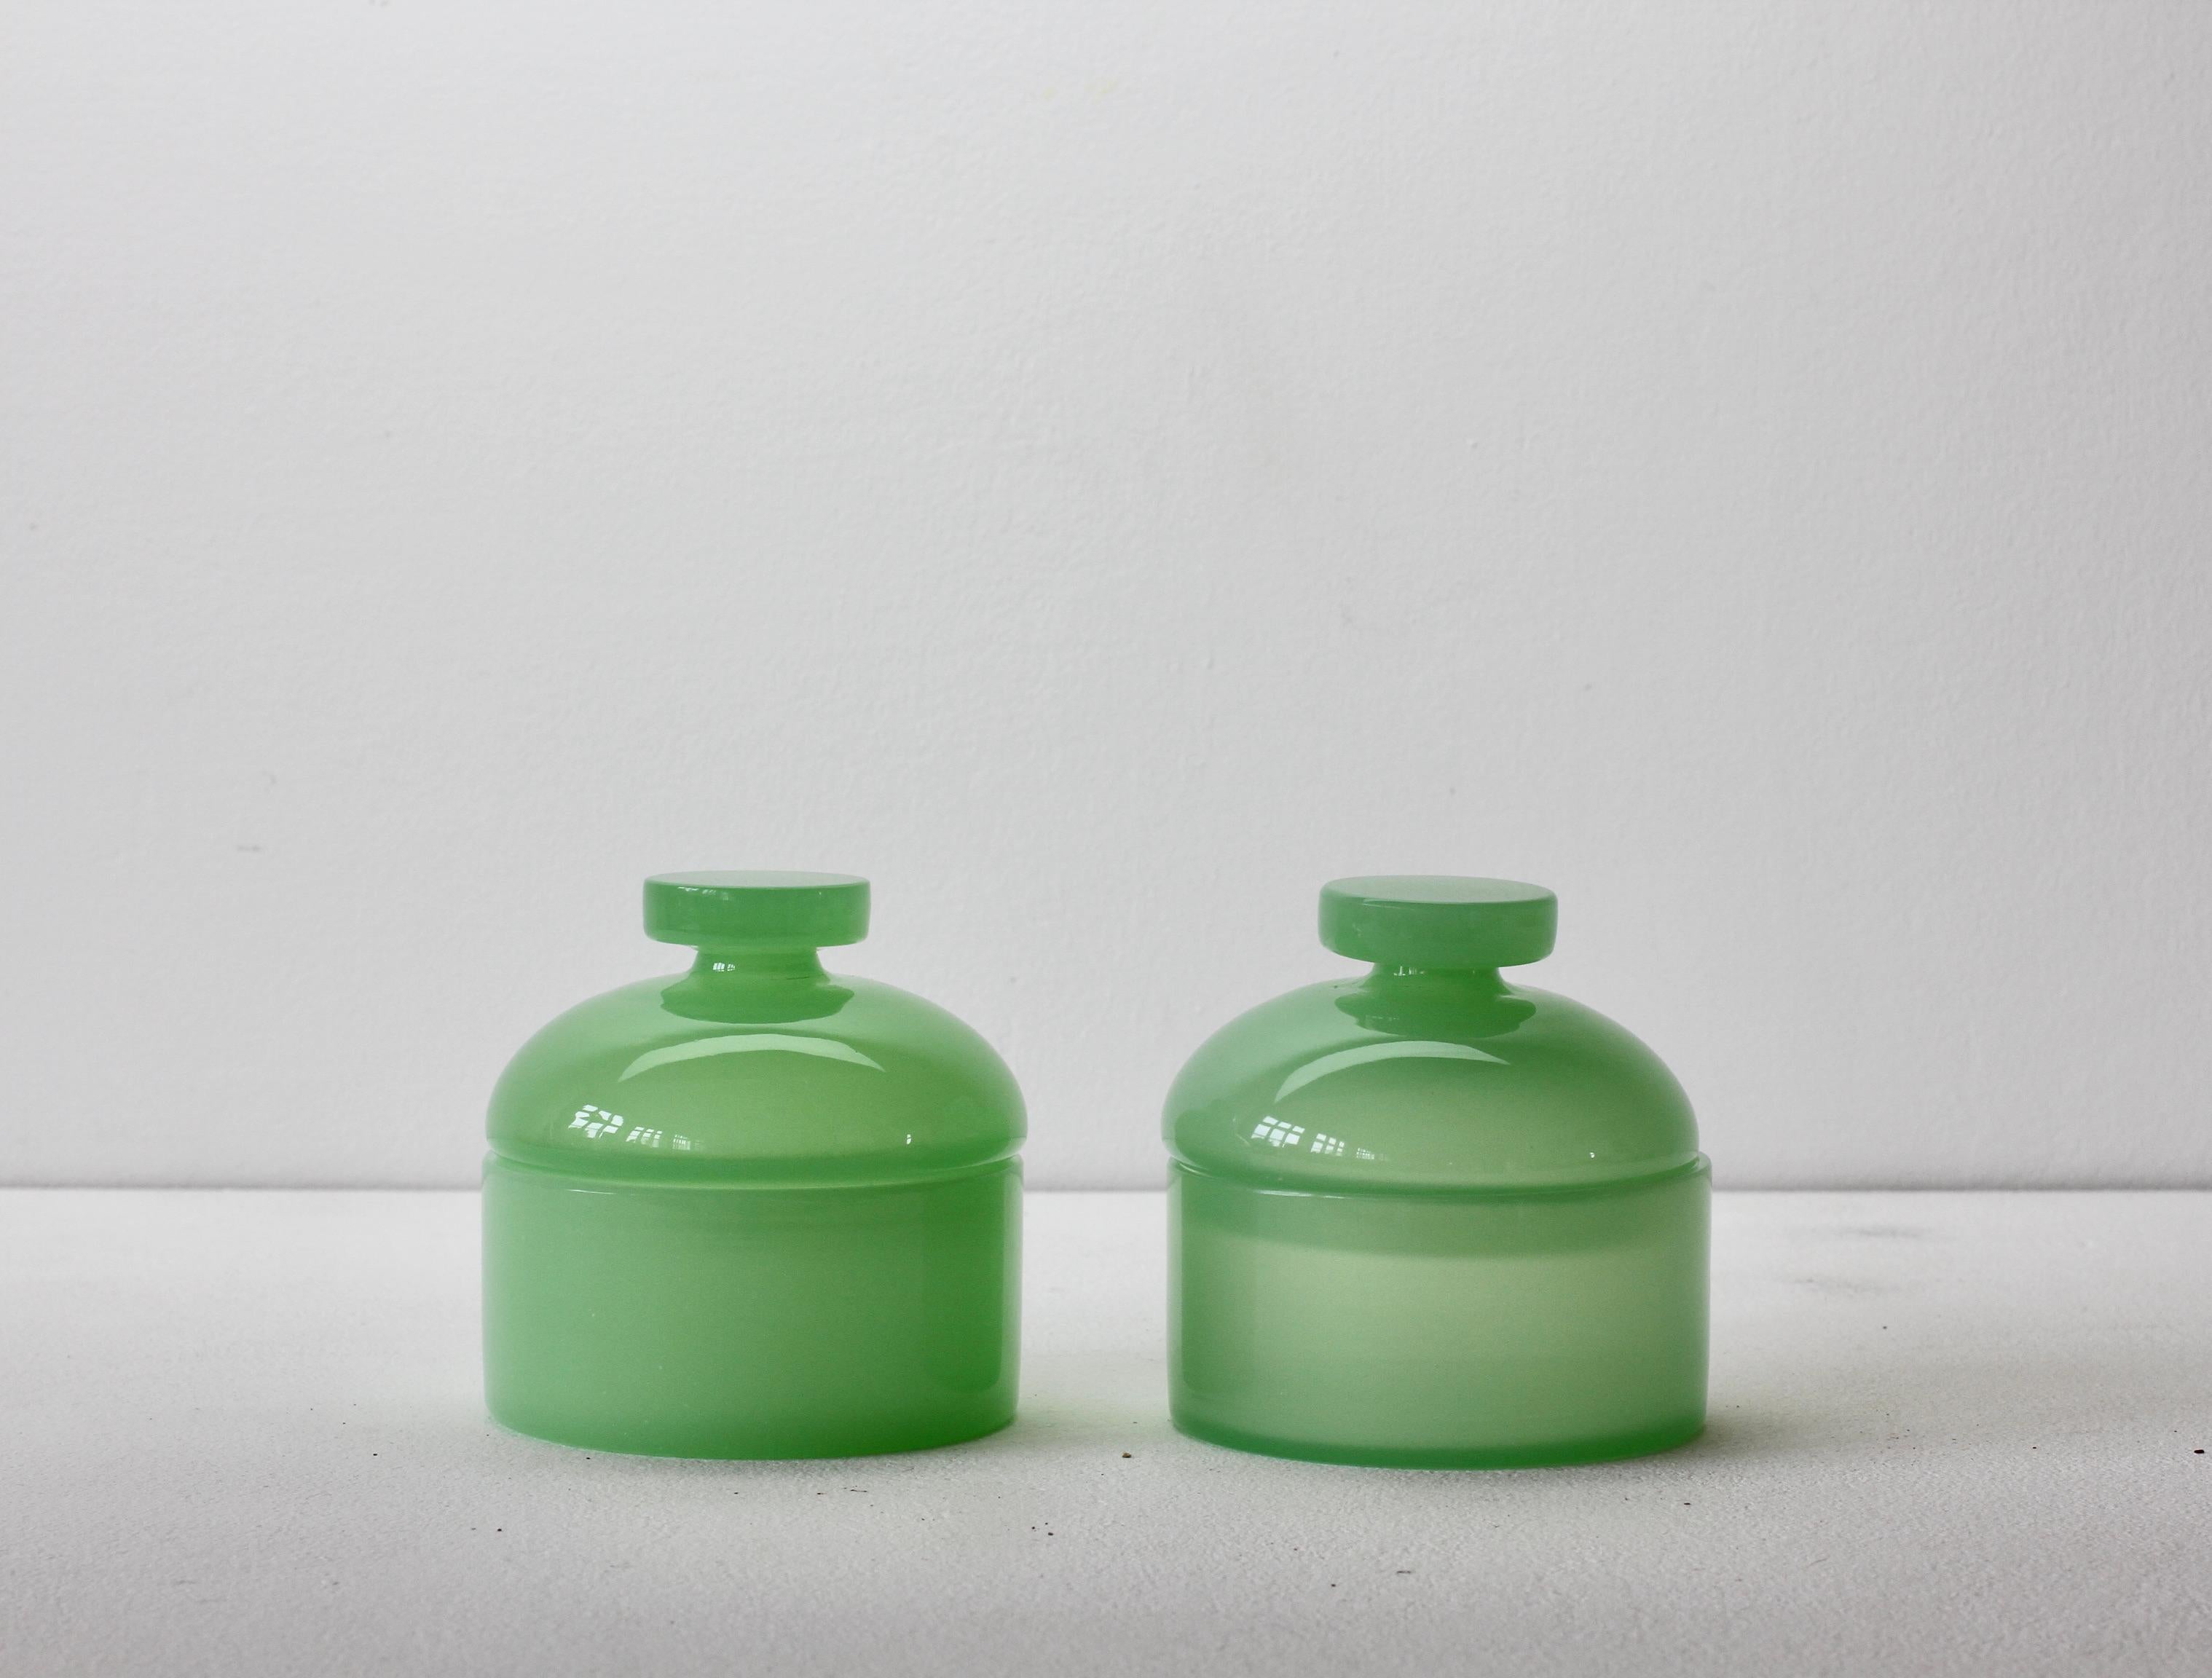 Cenedese Vintage Mitte des Jahrhunderts Paar neue alte Lager Murano opaline grün gefärbt / farbigen Glas runde Apotheker Gläser oder Aufbewahrungsbehälter mit Deckeln aus ca. 1970 mit Original-Papier-Etiketten befestigt. Wunderschönes italienisches